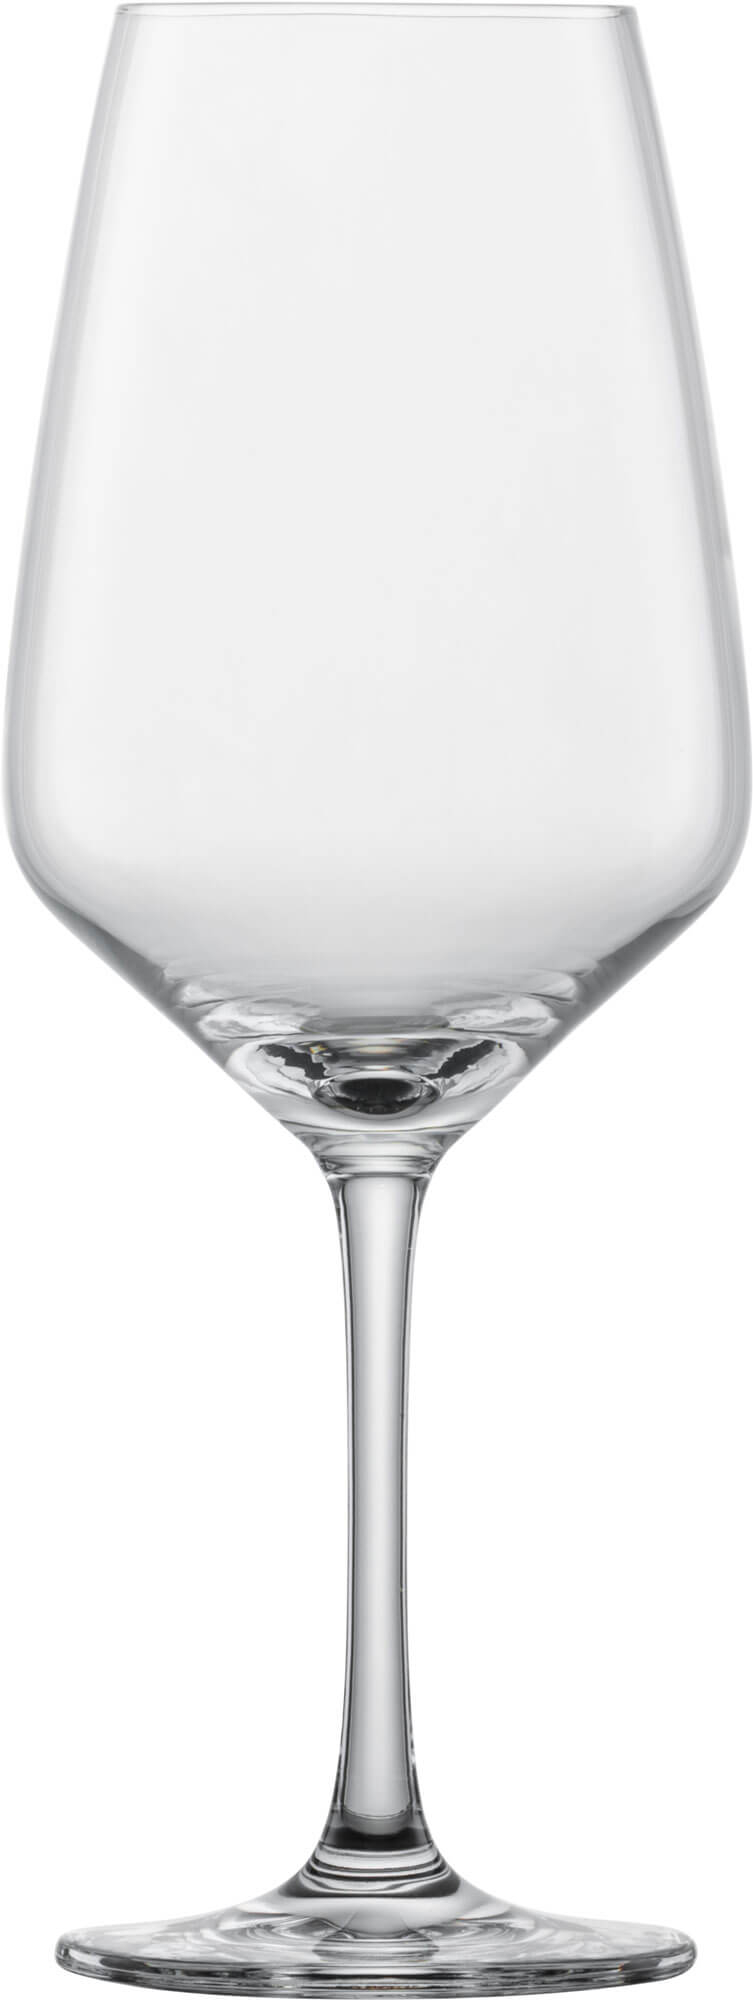 Red wine glass Taste, Schott Zwiesel - 497ml (6 pcs.)